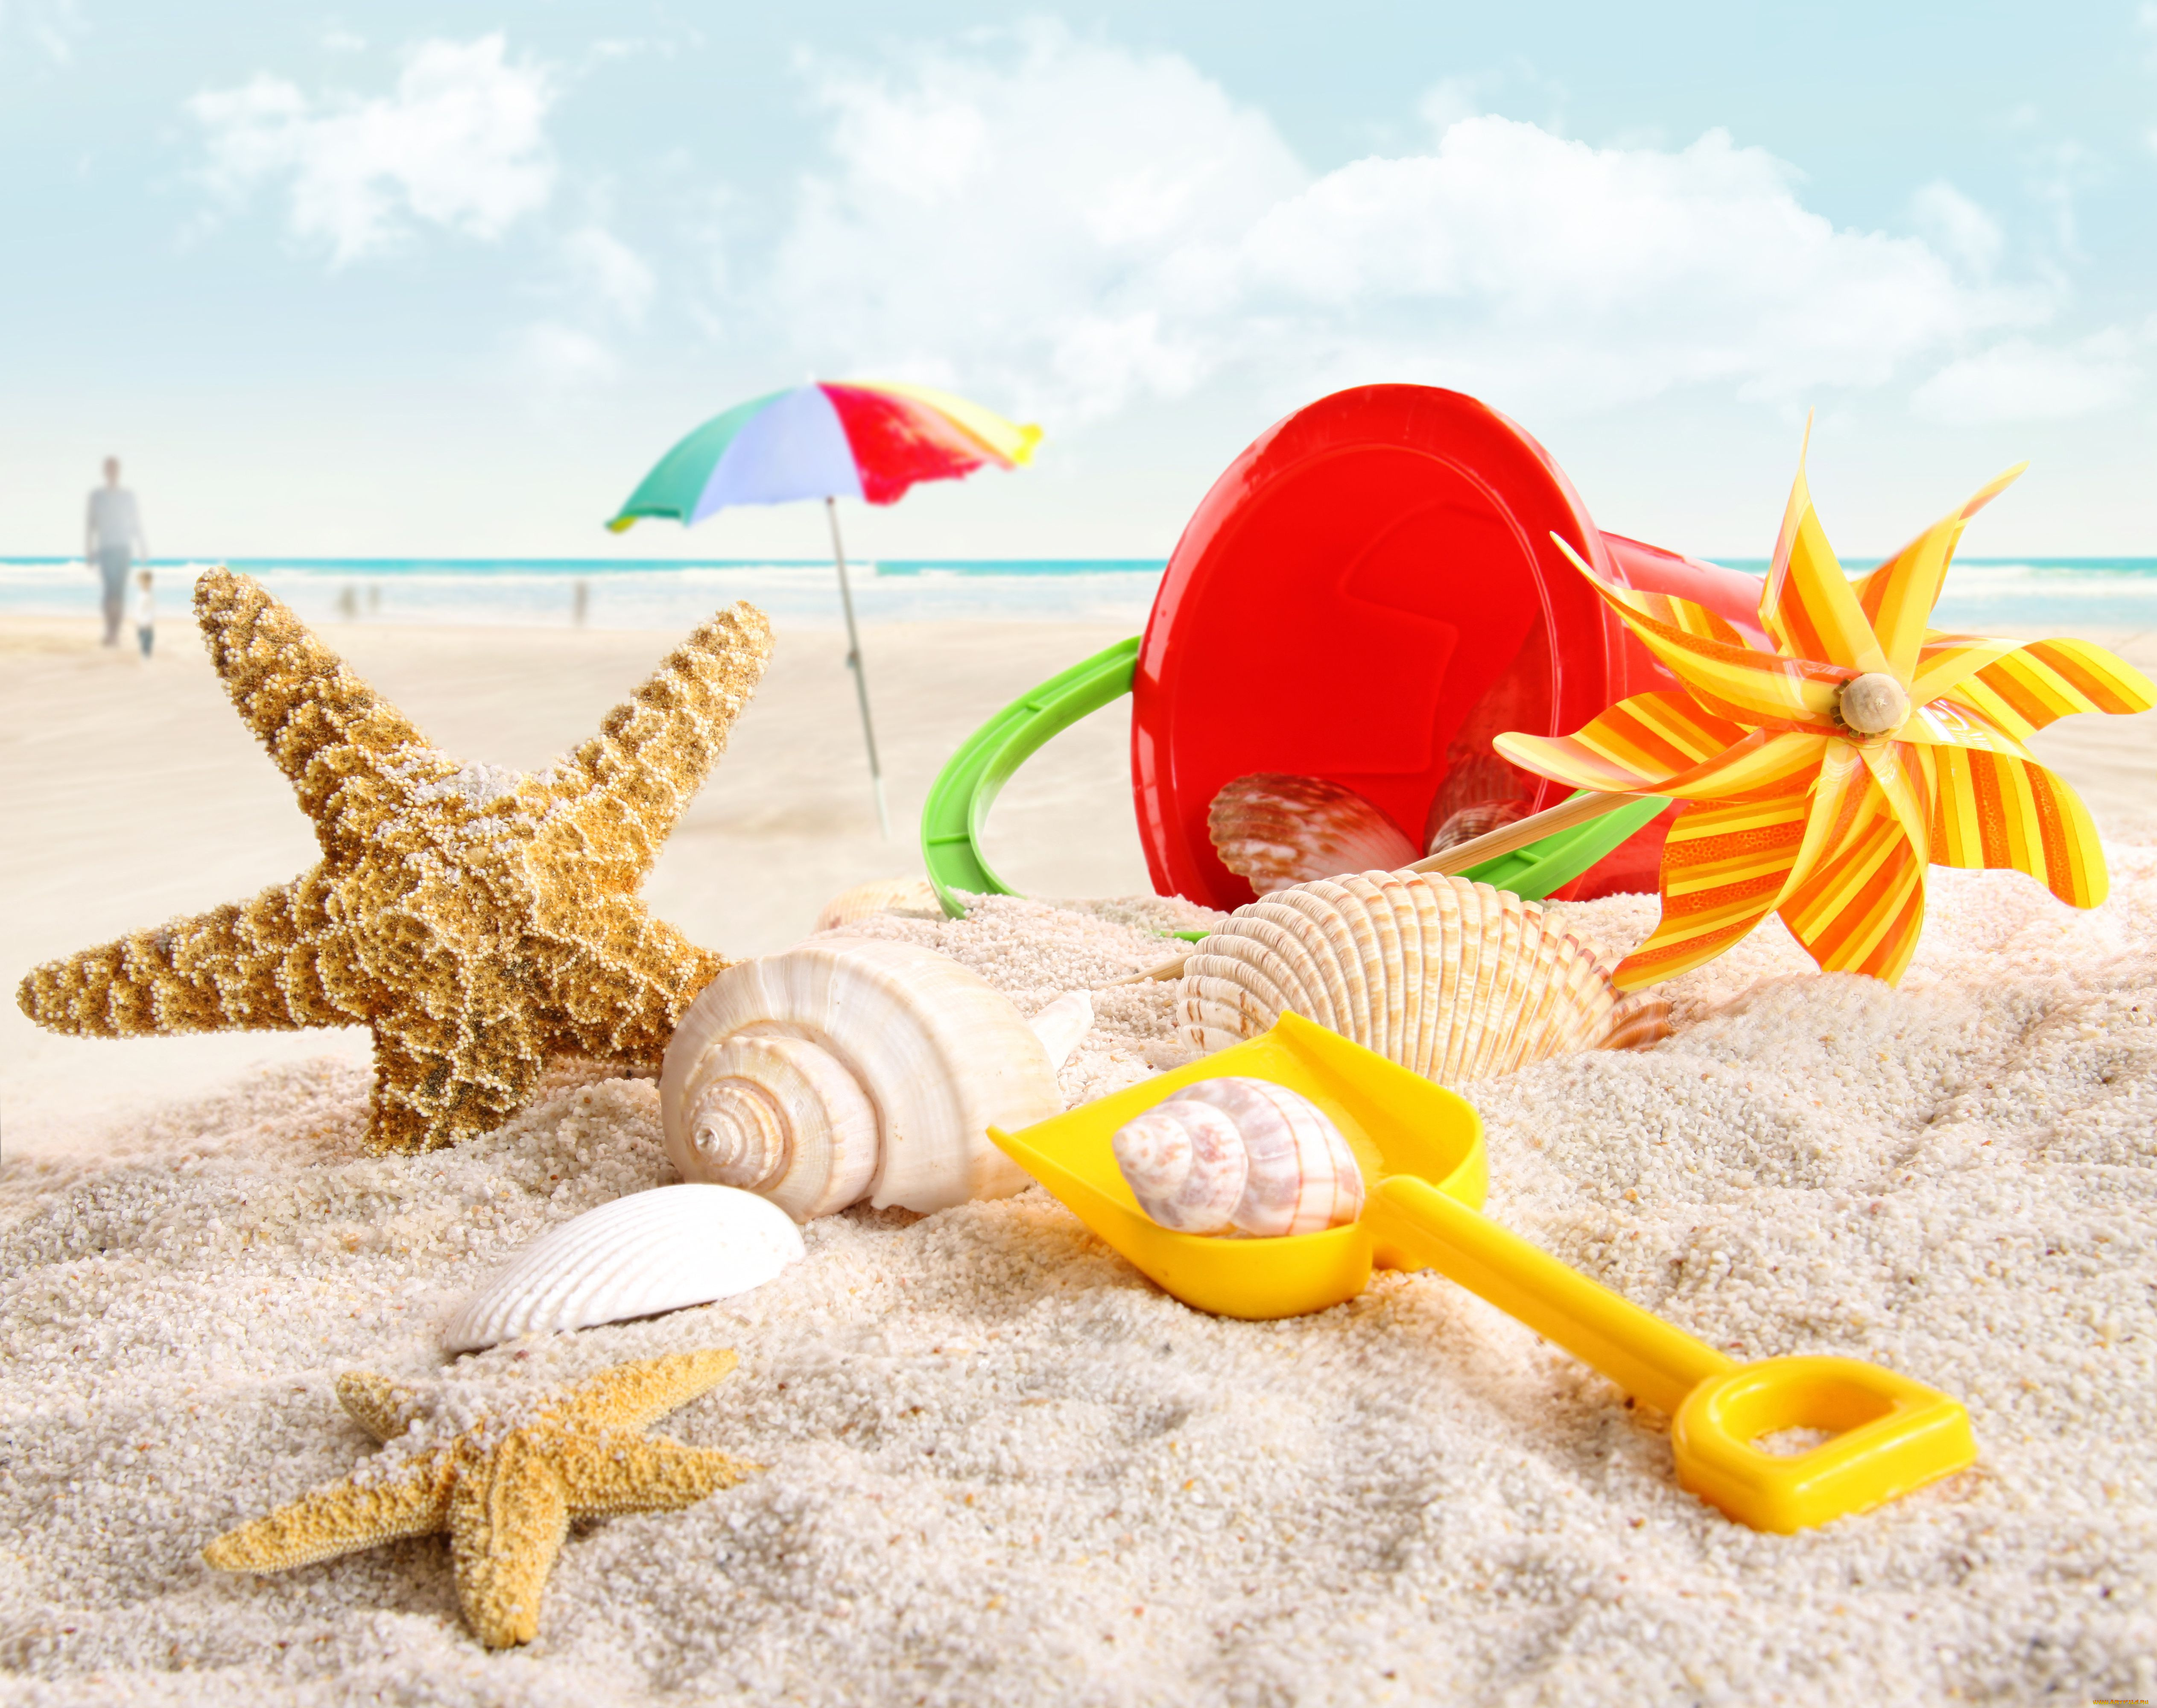 разное, ракушки, кораллы, декоративные, spa, камни, савок, зонт, ведёрко, морские, звёзды, игрушки, пляж, песок